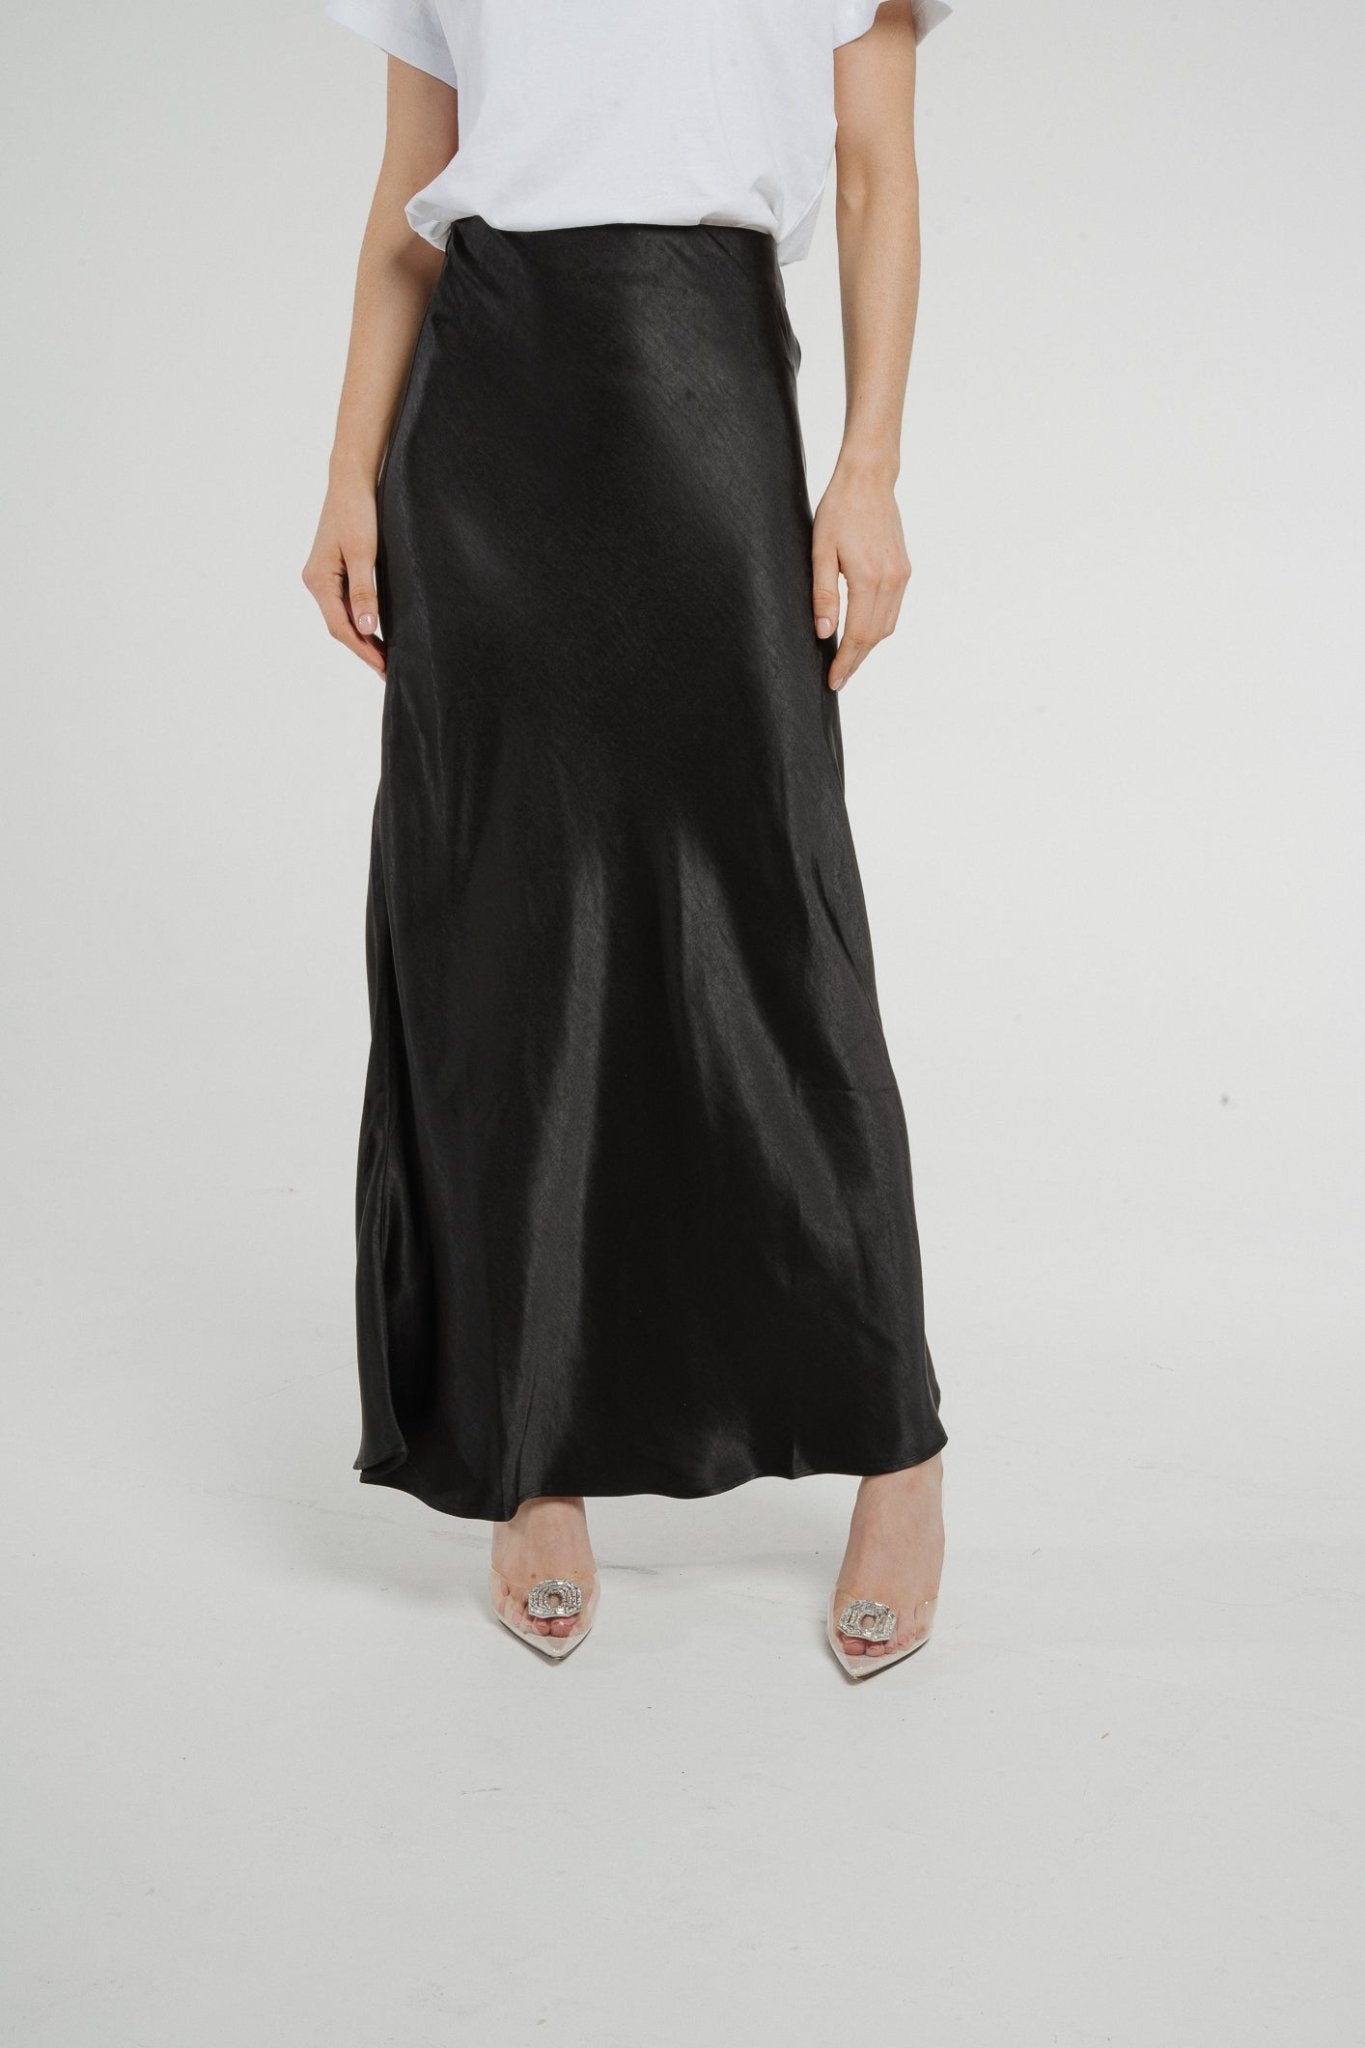 Jane Longline Satin Skirt In Black - The Walk in Wardrobe